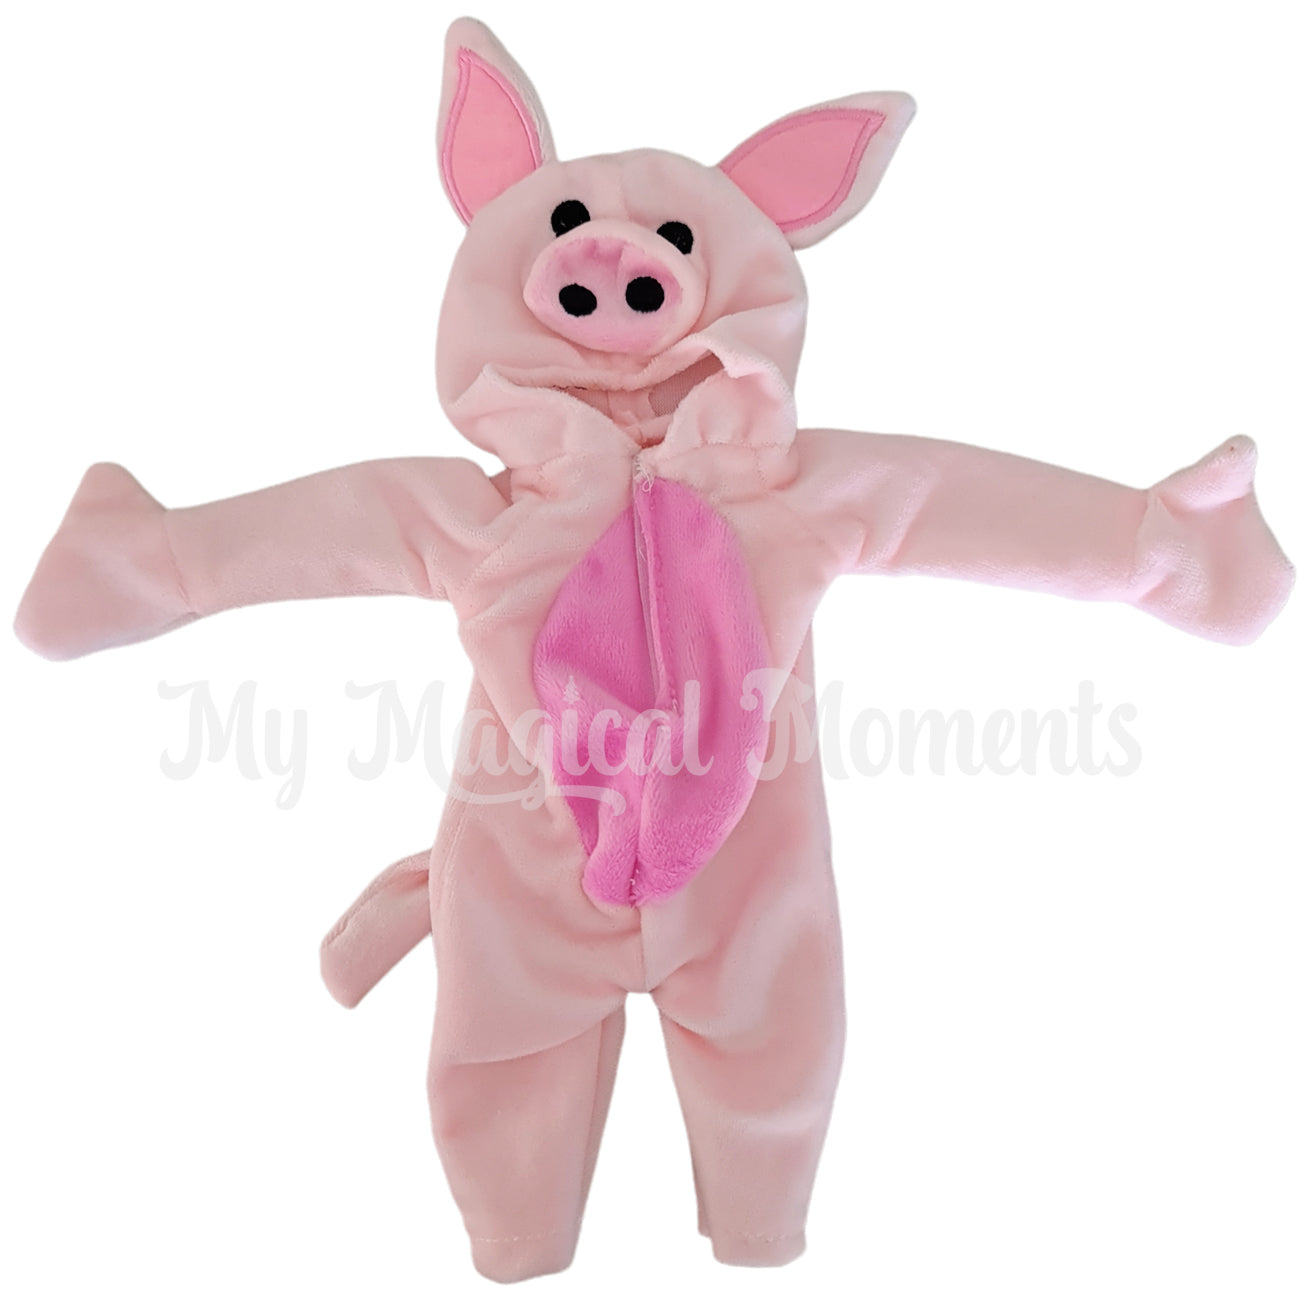 Pig Elf dress up